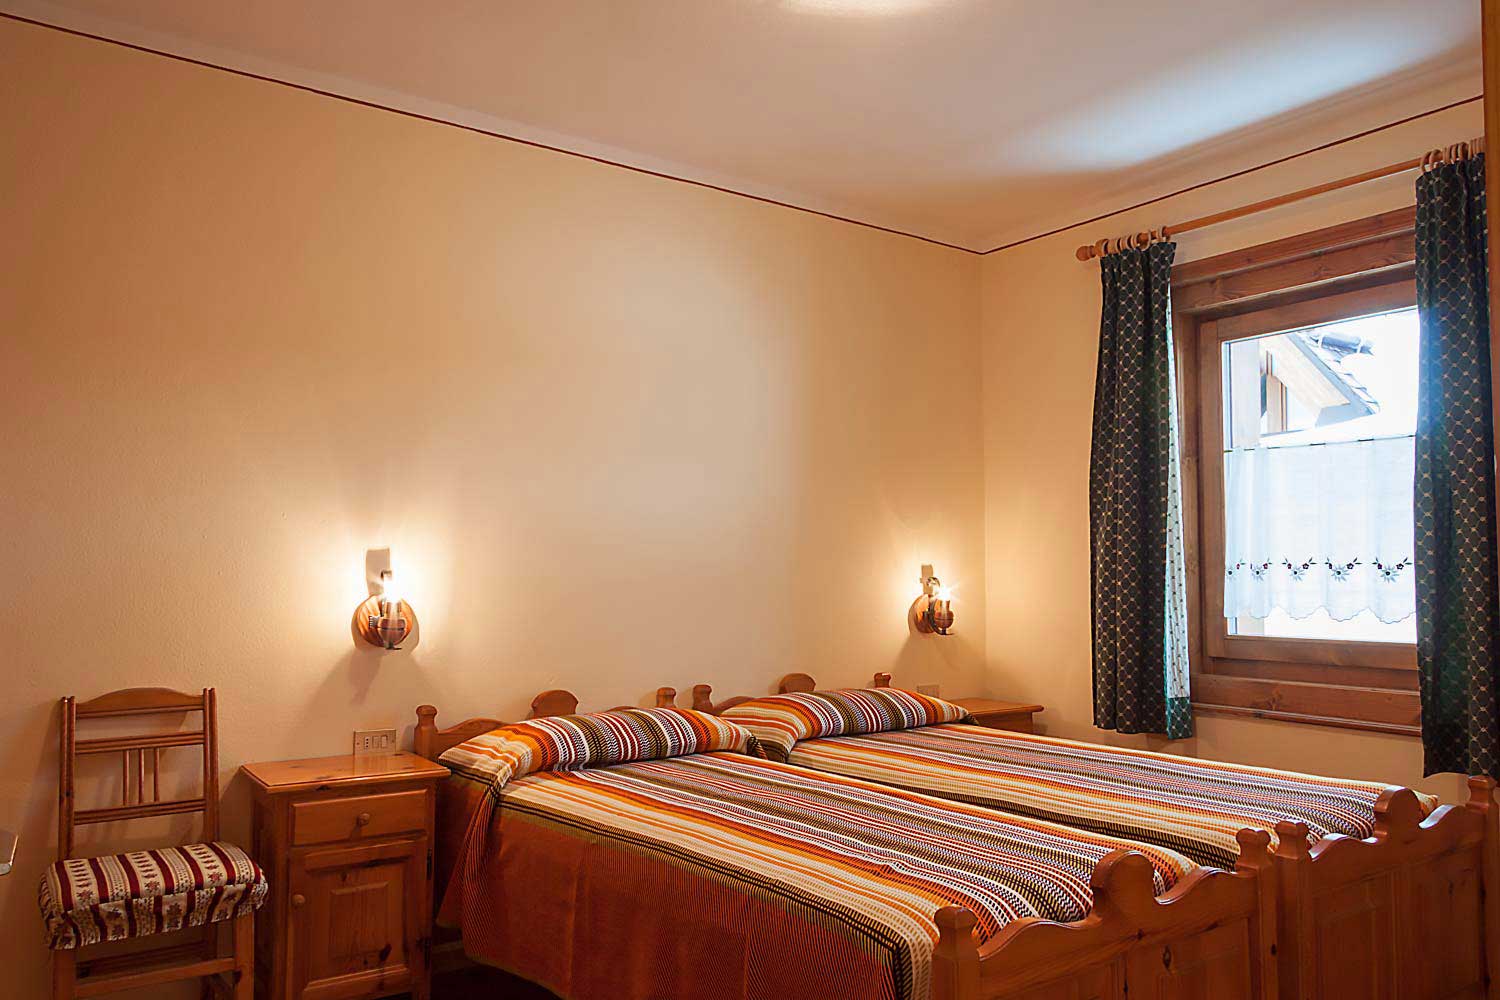 Appartamento 2 | Li Pont | Prenota il tuo appartamento in affitto a Livigno